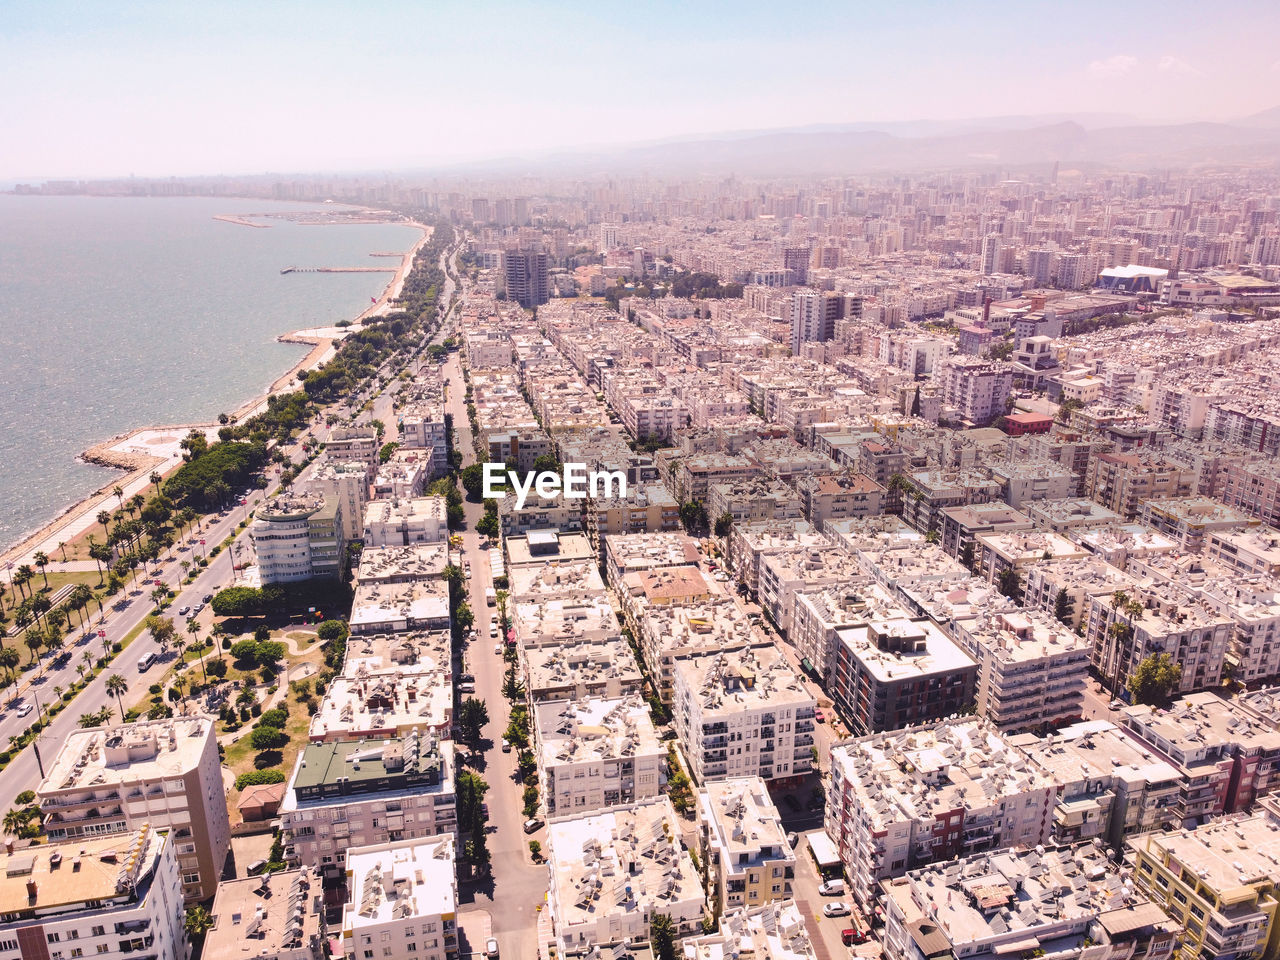 Neighborhoods of seaside metropolis. city blocks aerial view. mersin, turkey.